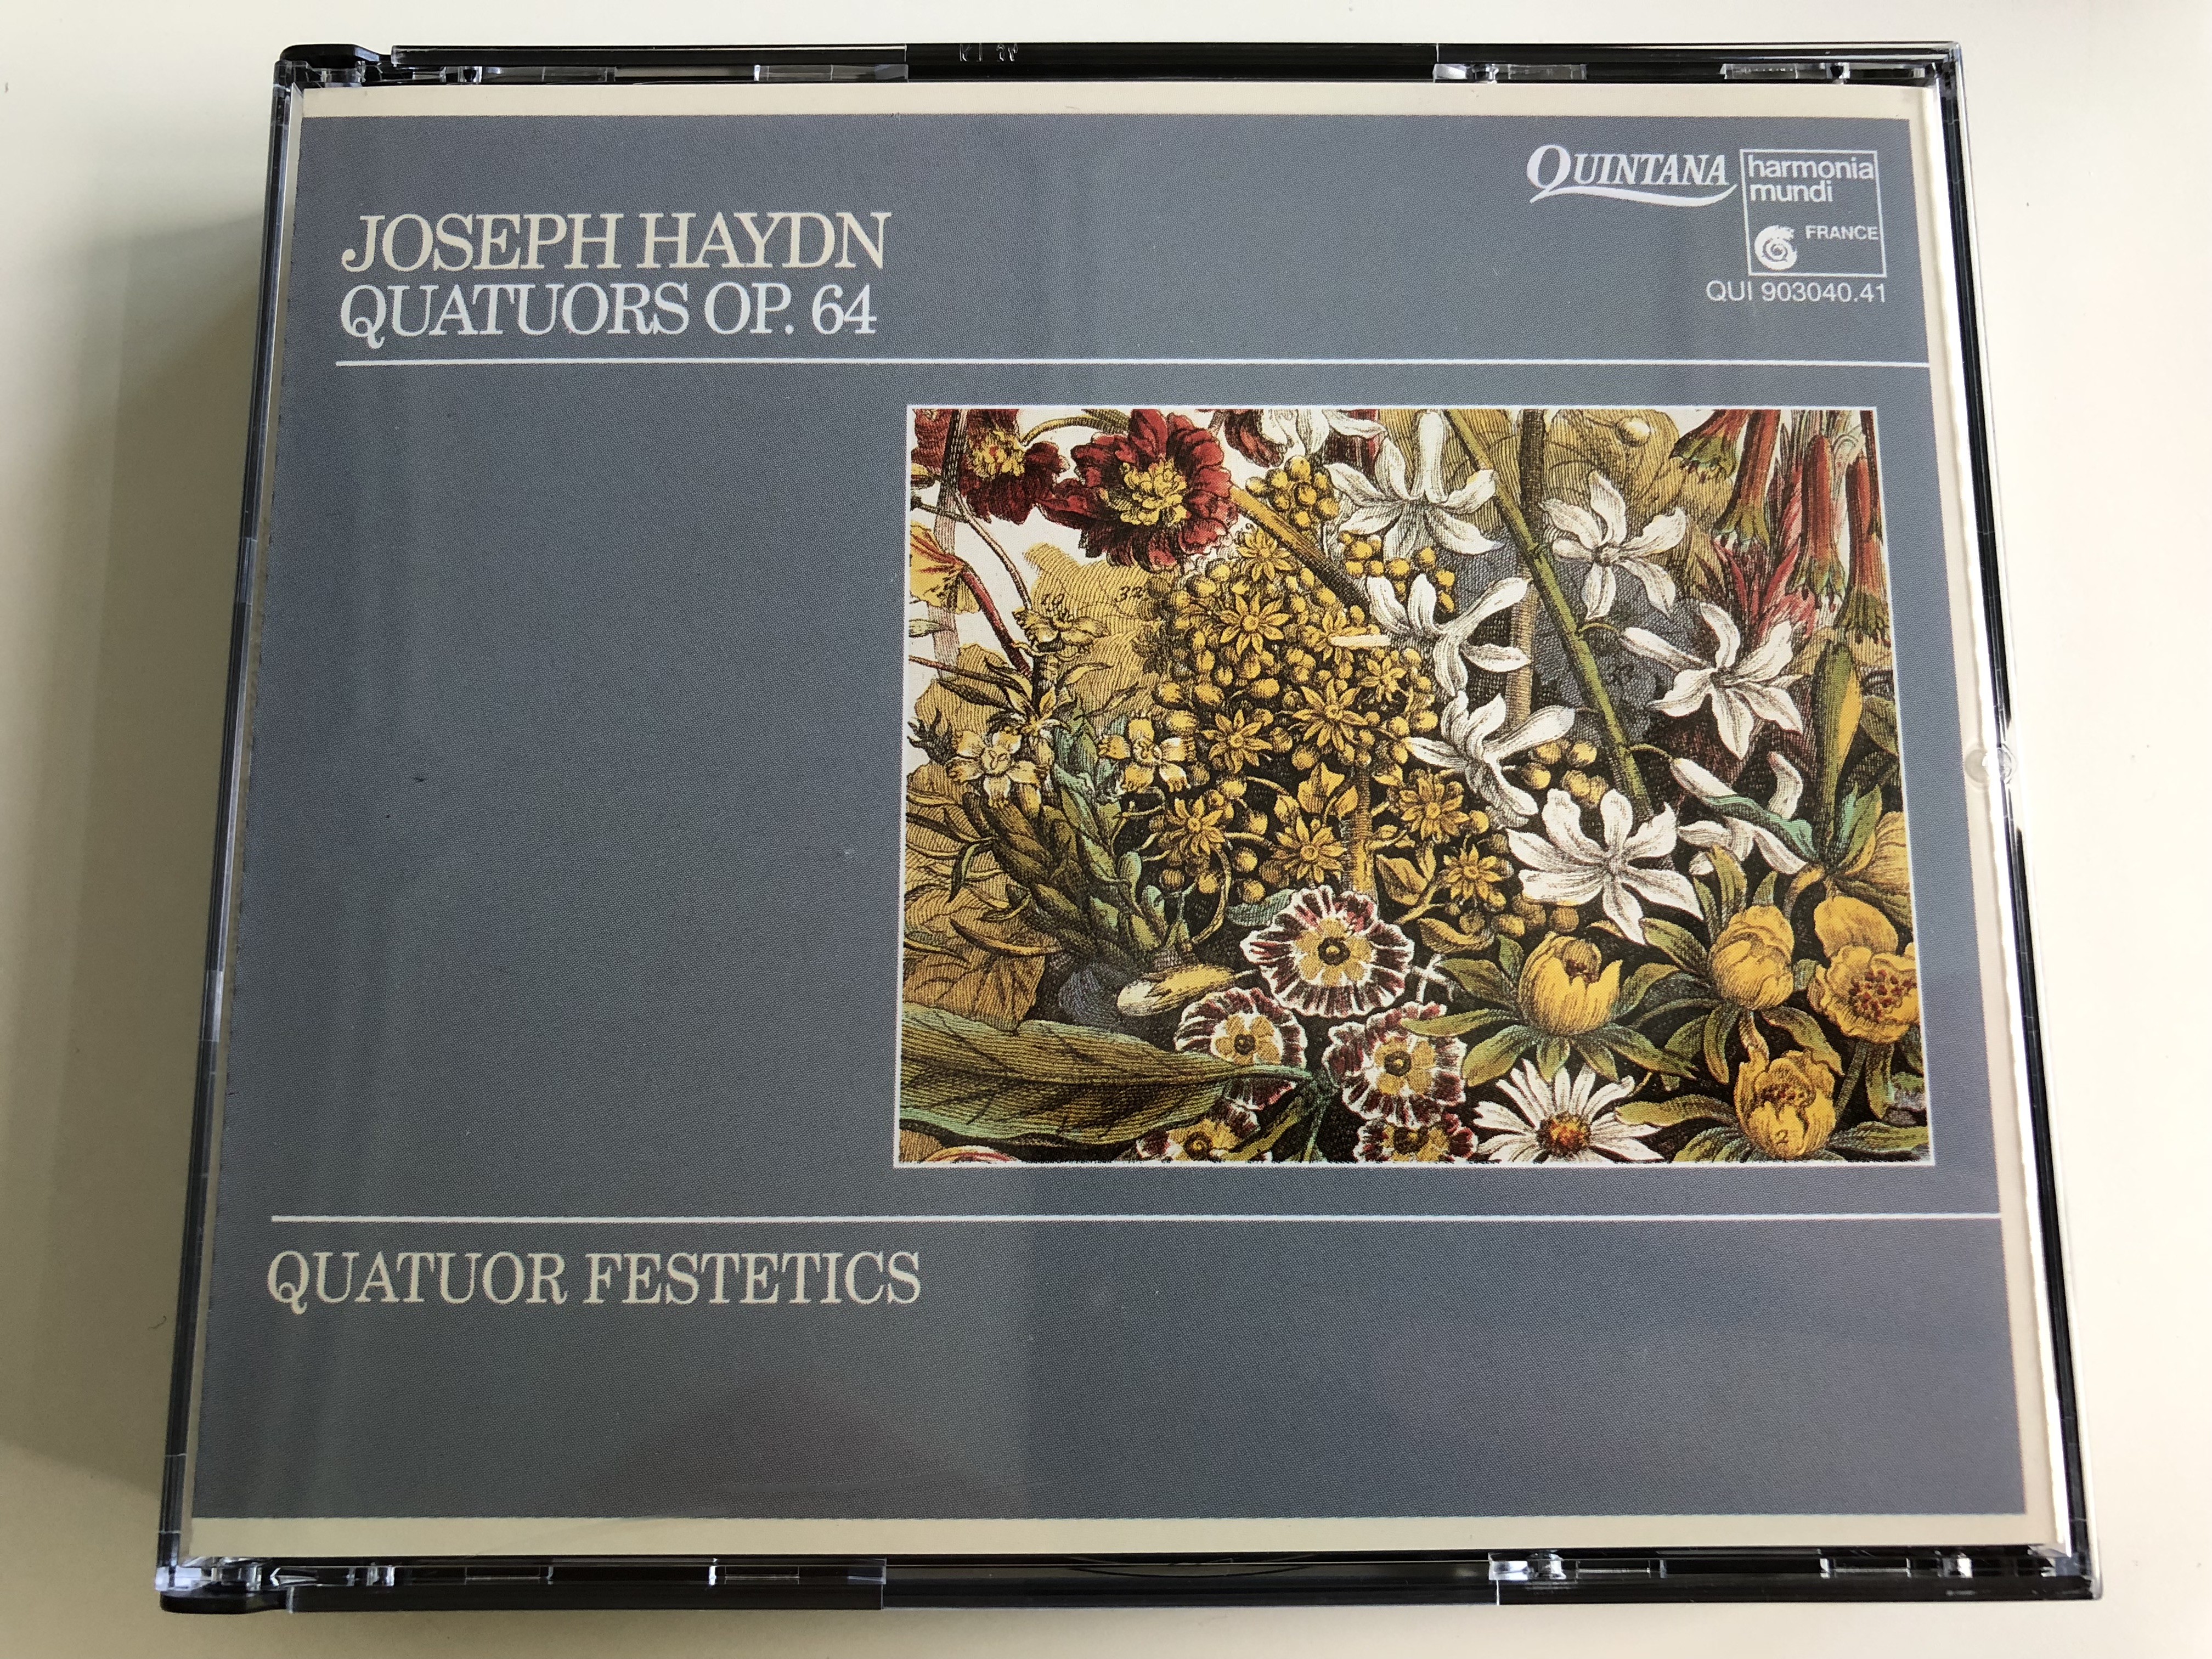 joseph-haydn-quatuors-op.64-quator-festetics-on-period-instrument-audio-cd-1992-qui-903040.41-2-cd-1-.jpg